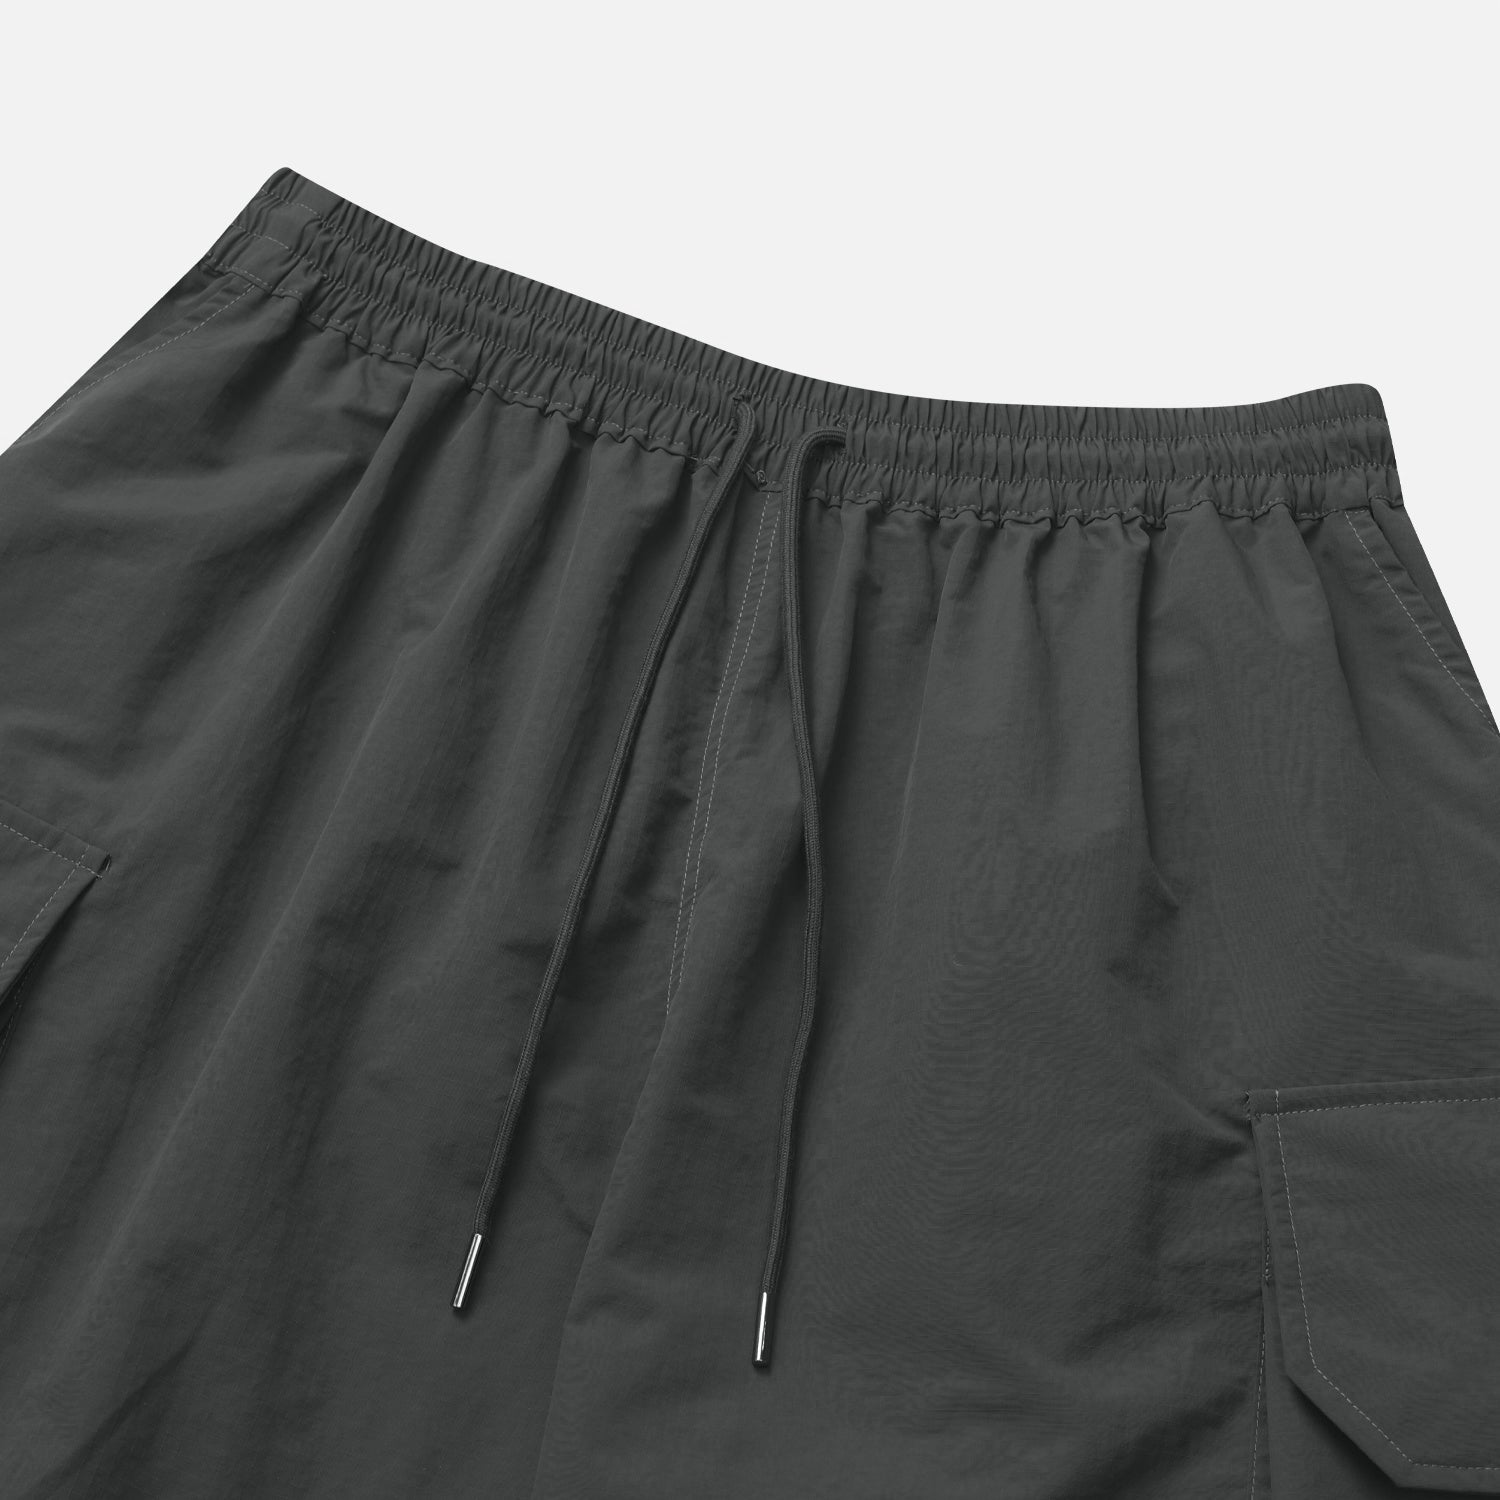 Pastel cargo shorts